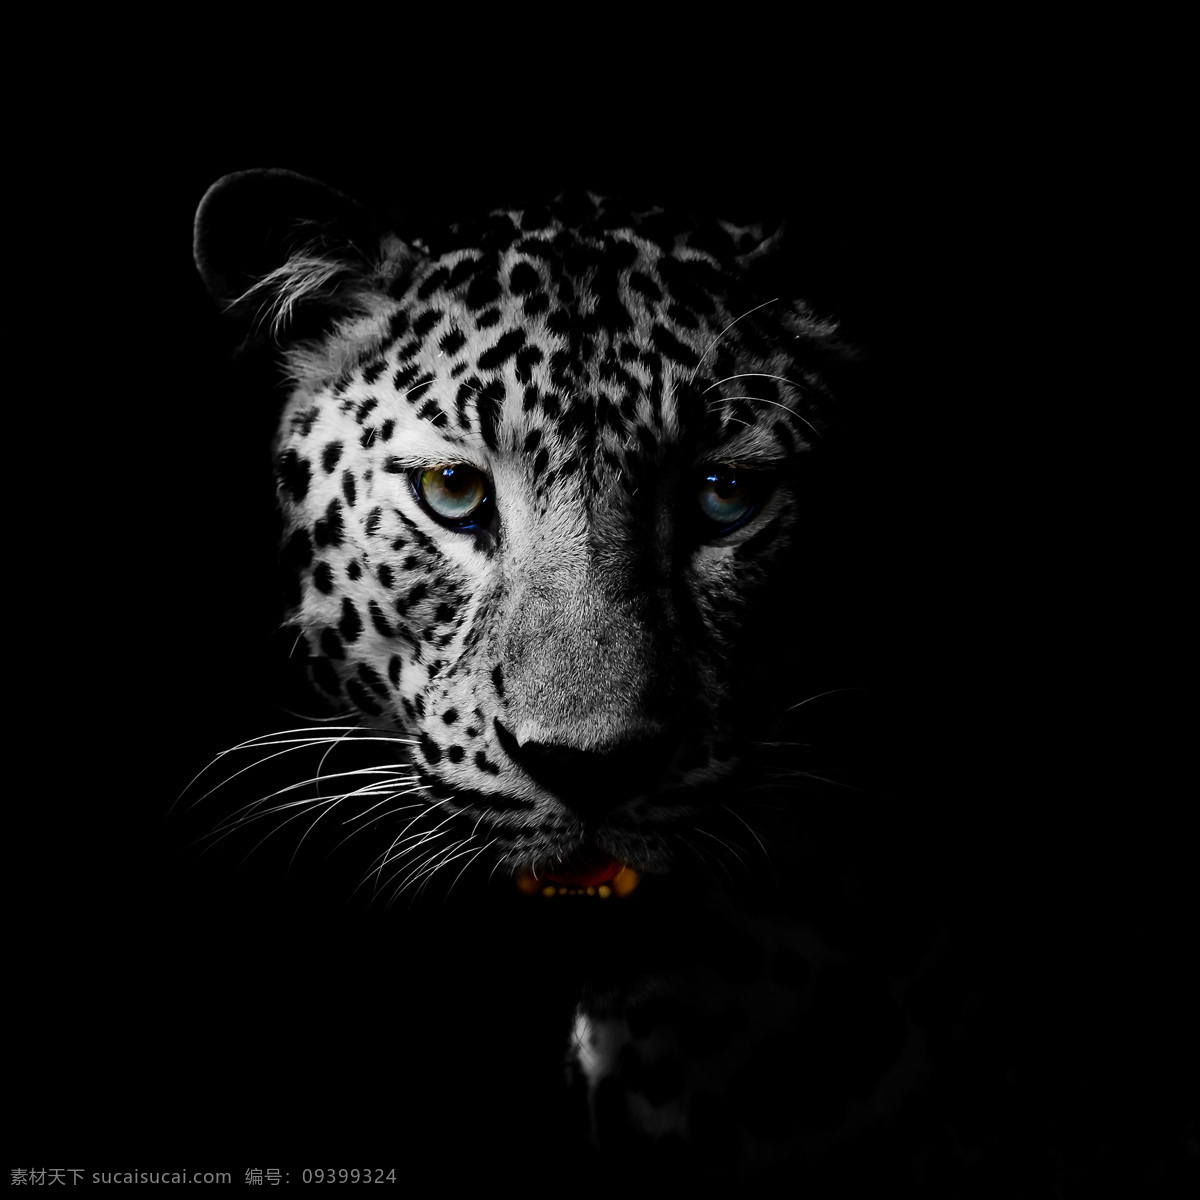 豹子头部特写 豹子 头部特写 猎豹 野生动物 动物摄影 陆地动物 生物世界 黑色